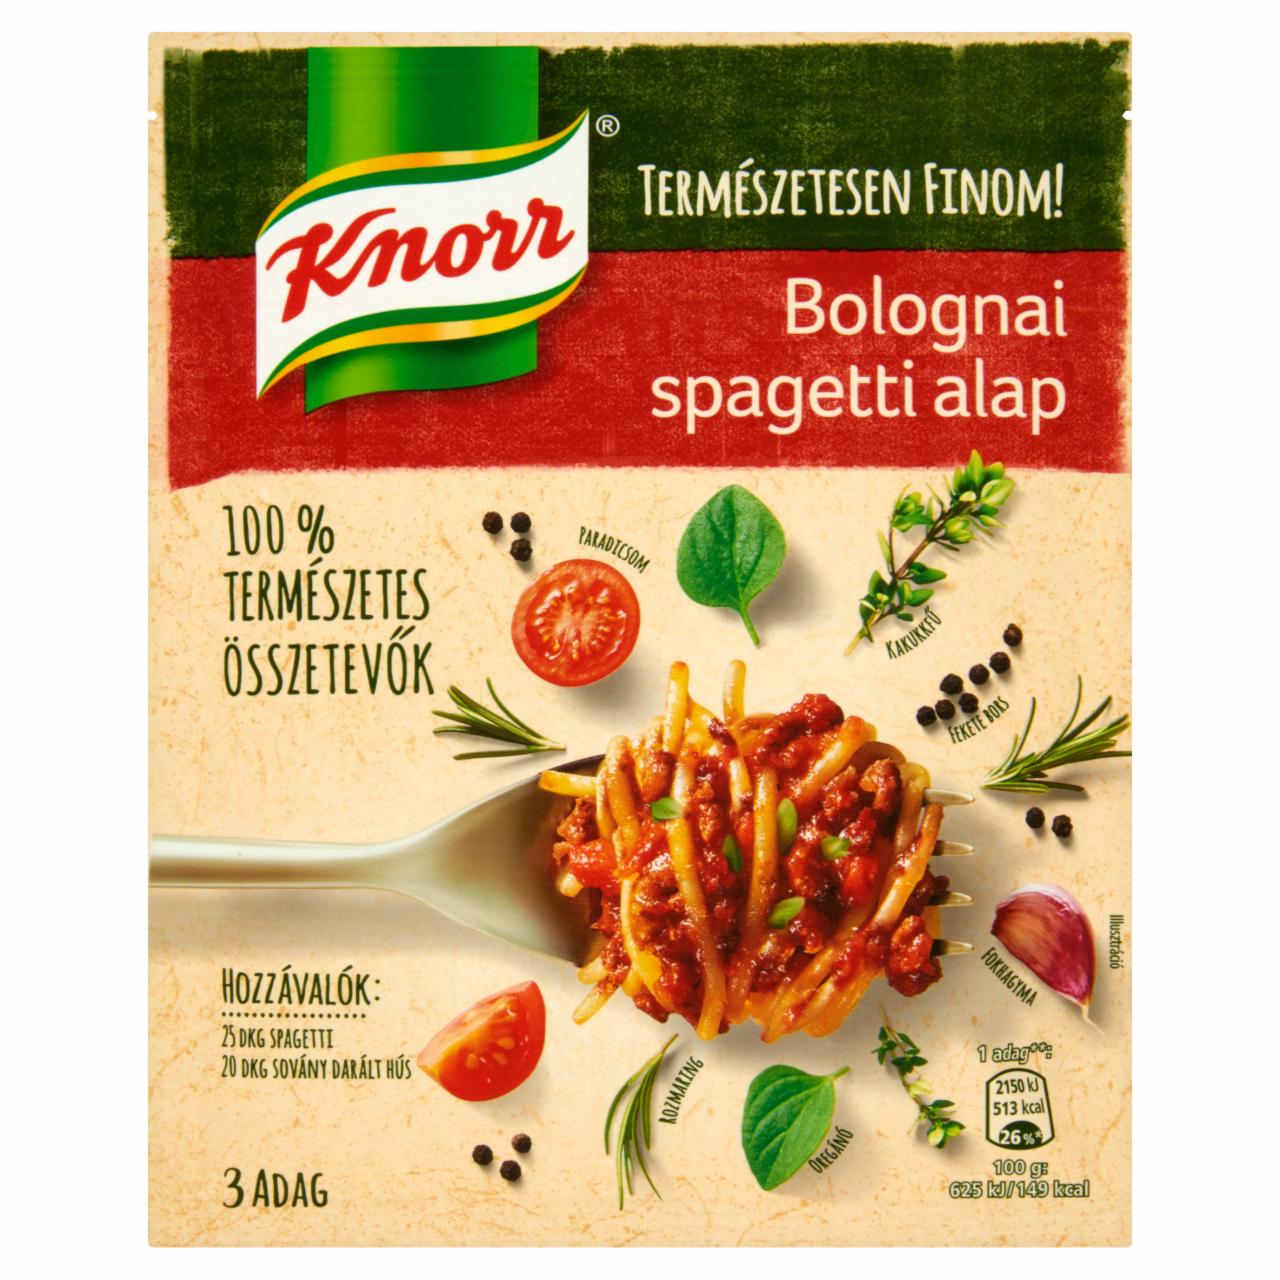 Képek - Knorr bolognai spagetti alap 43 g